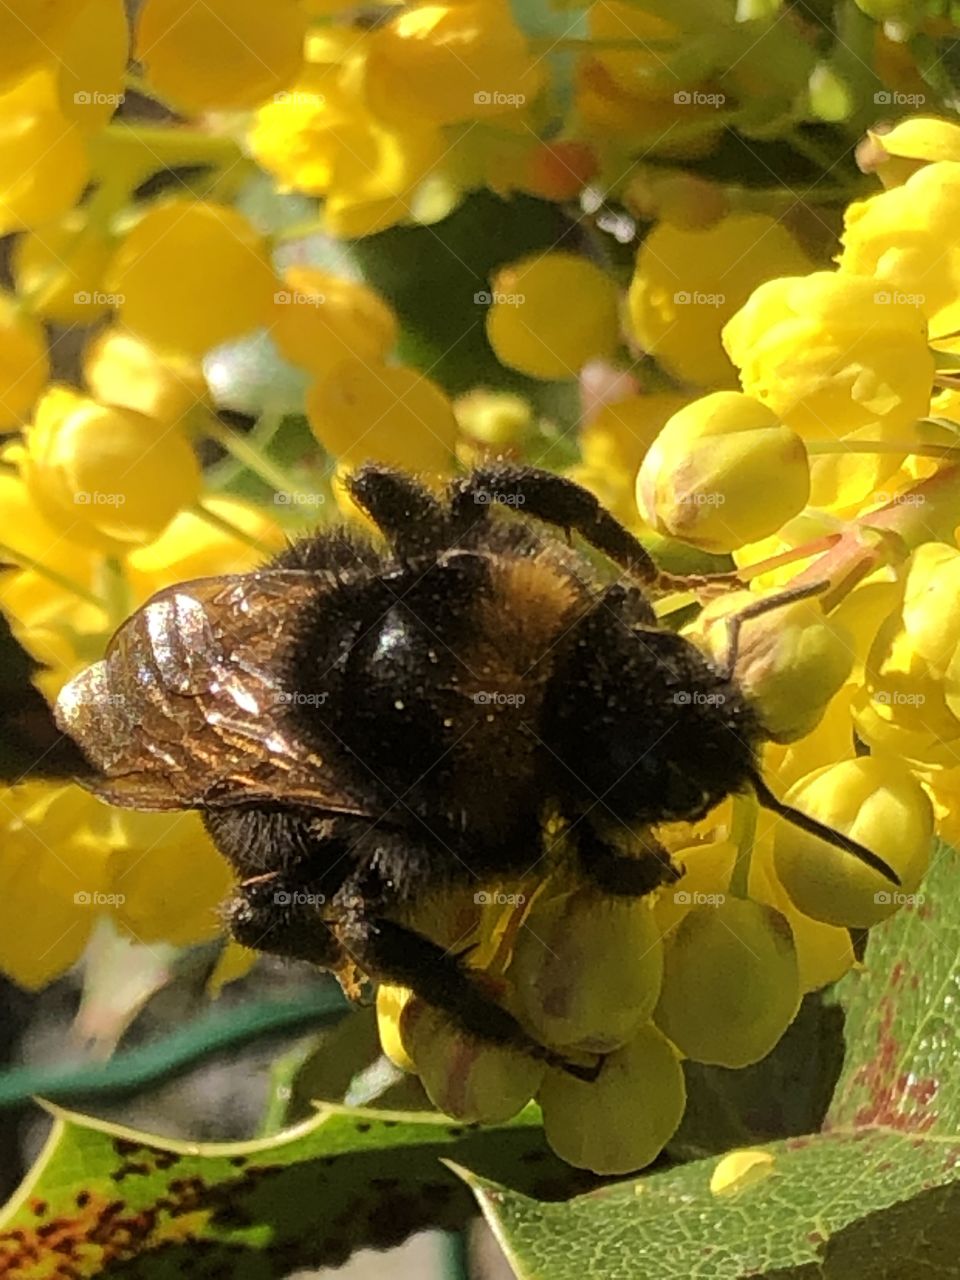 Bumblebee on yellow flowers 